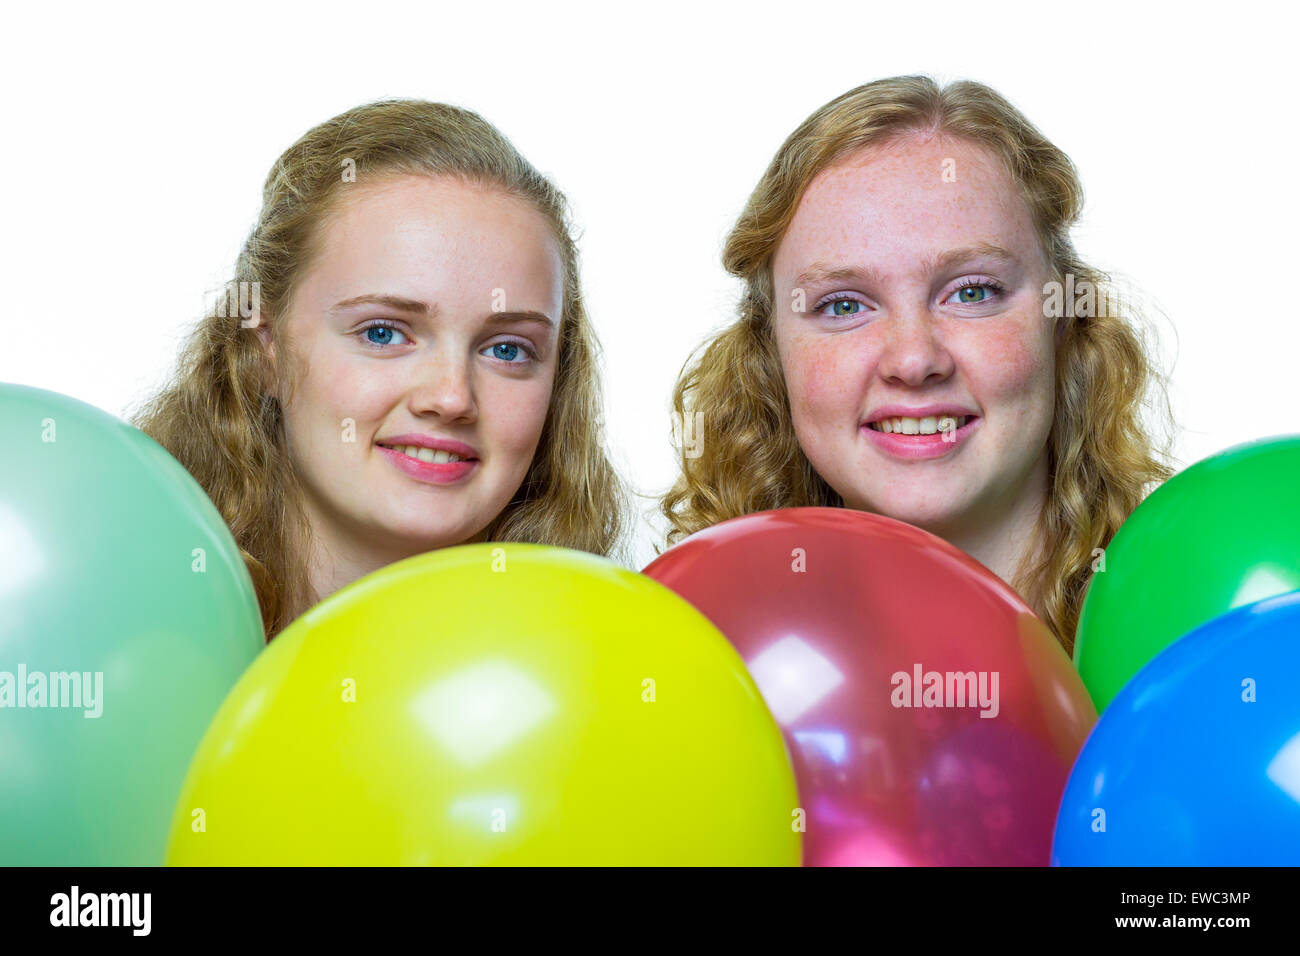 Zwei lächelnde kaukasische Mädchen im Teenageralter hinter verschiedenen bunten Luftballons, die isoliert auf weißem Hintergrund Stockfoto